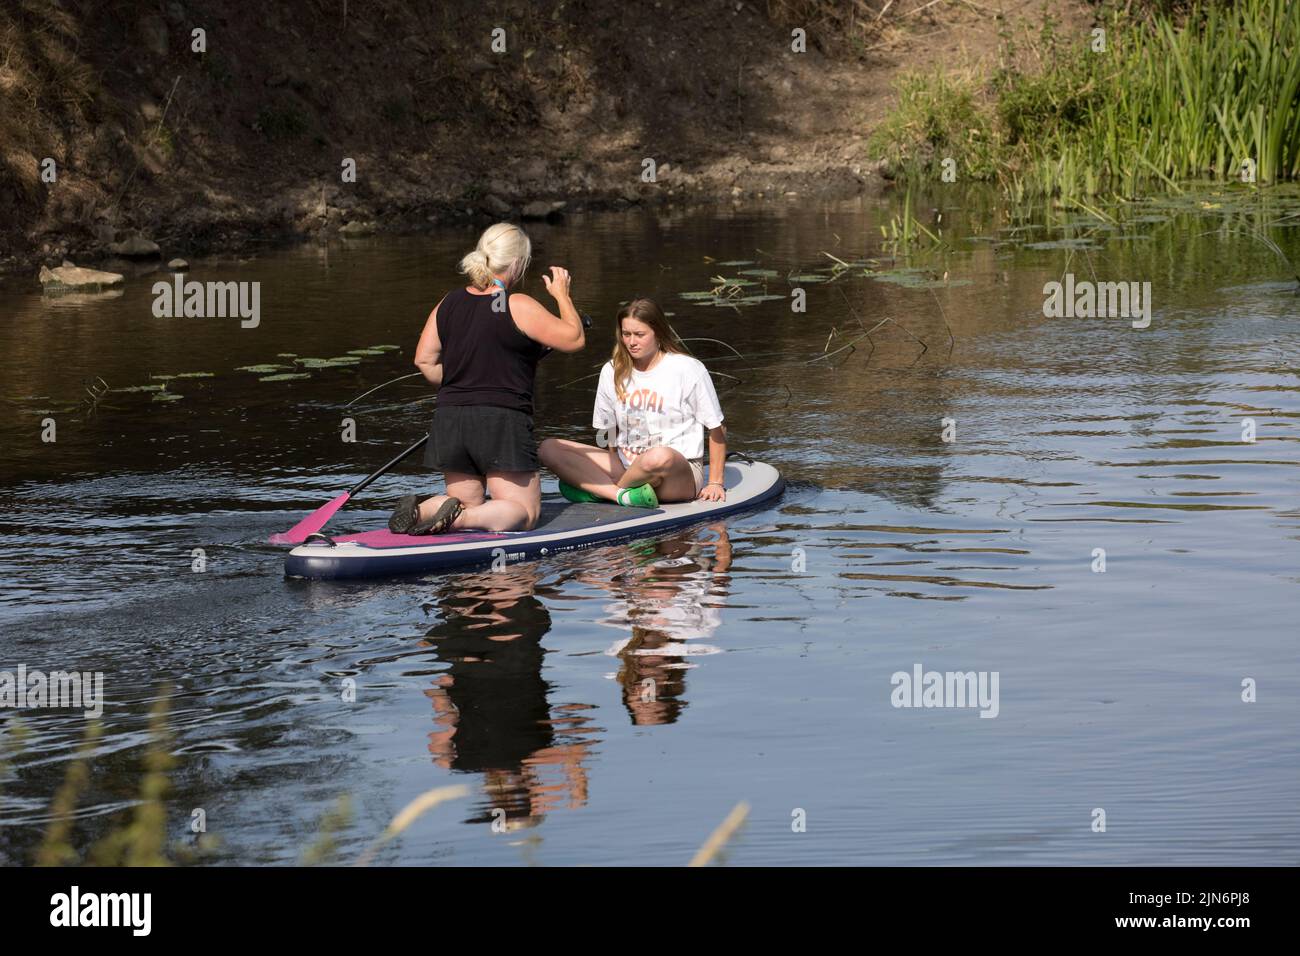 Dos mujeres remaban en el río Avon Weston en Avon Warwkickshire UK Foto de stock